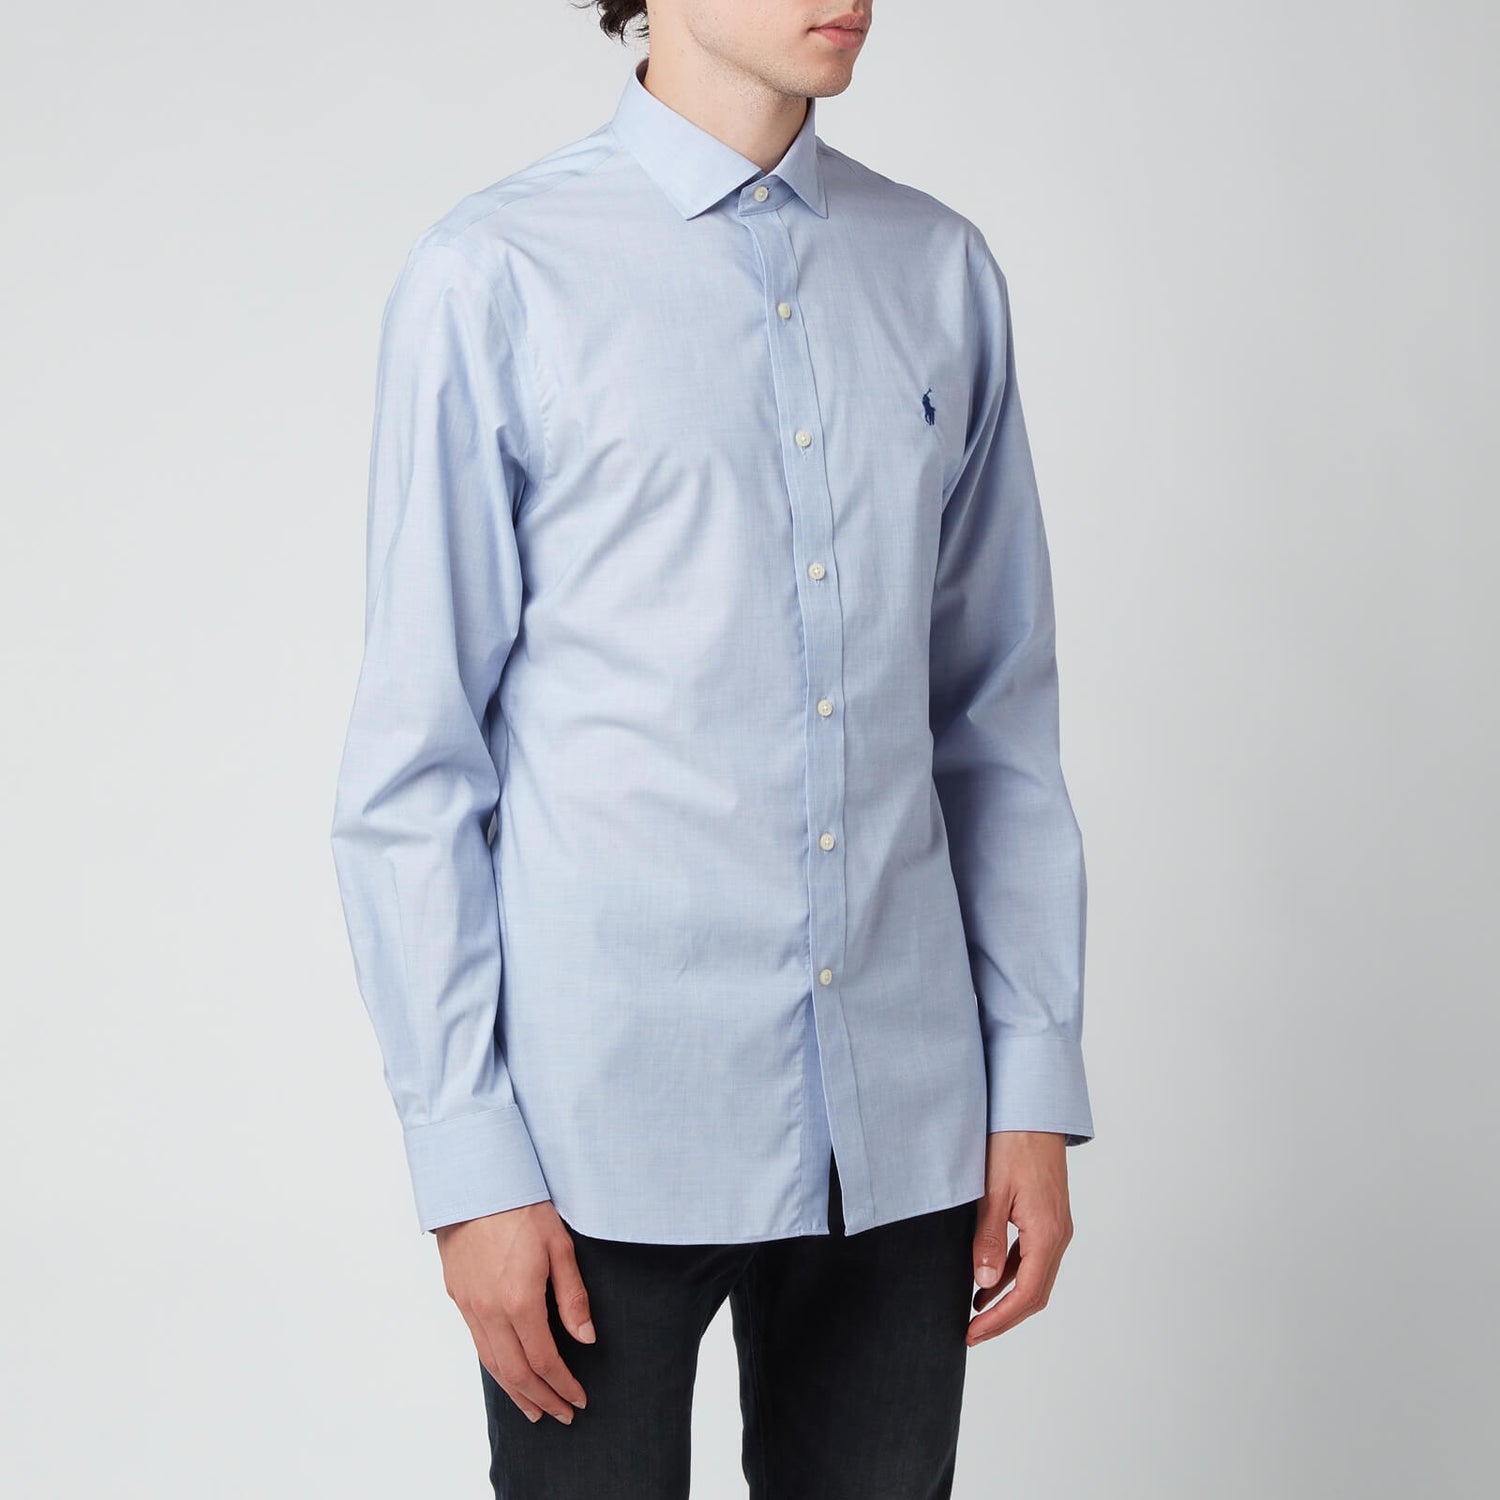 Polo Ralph Lauren Men's Slim Fit Poplin Shirt - Light Blue/White - 17.5